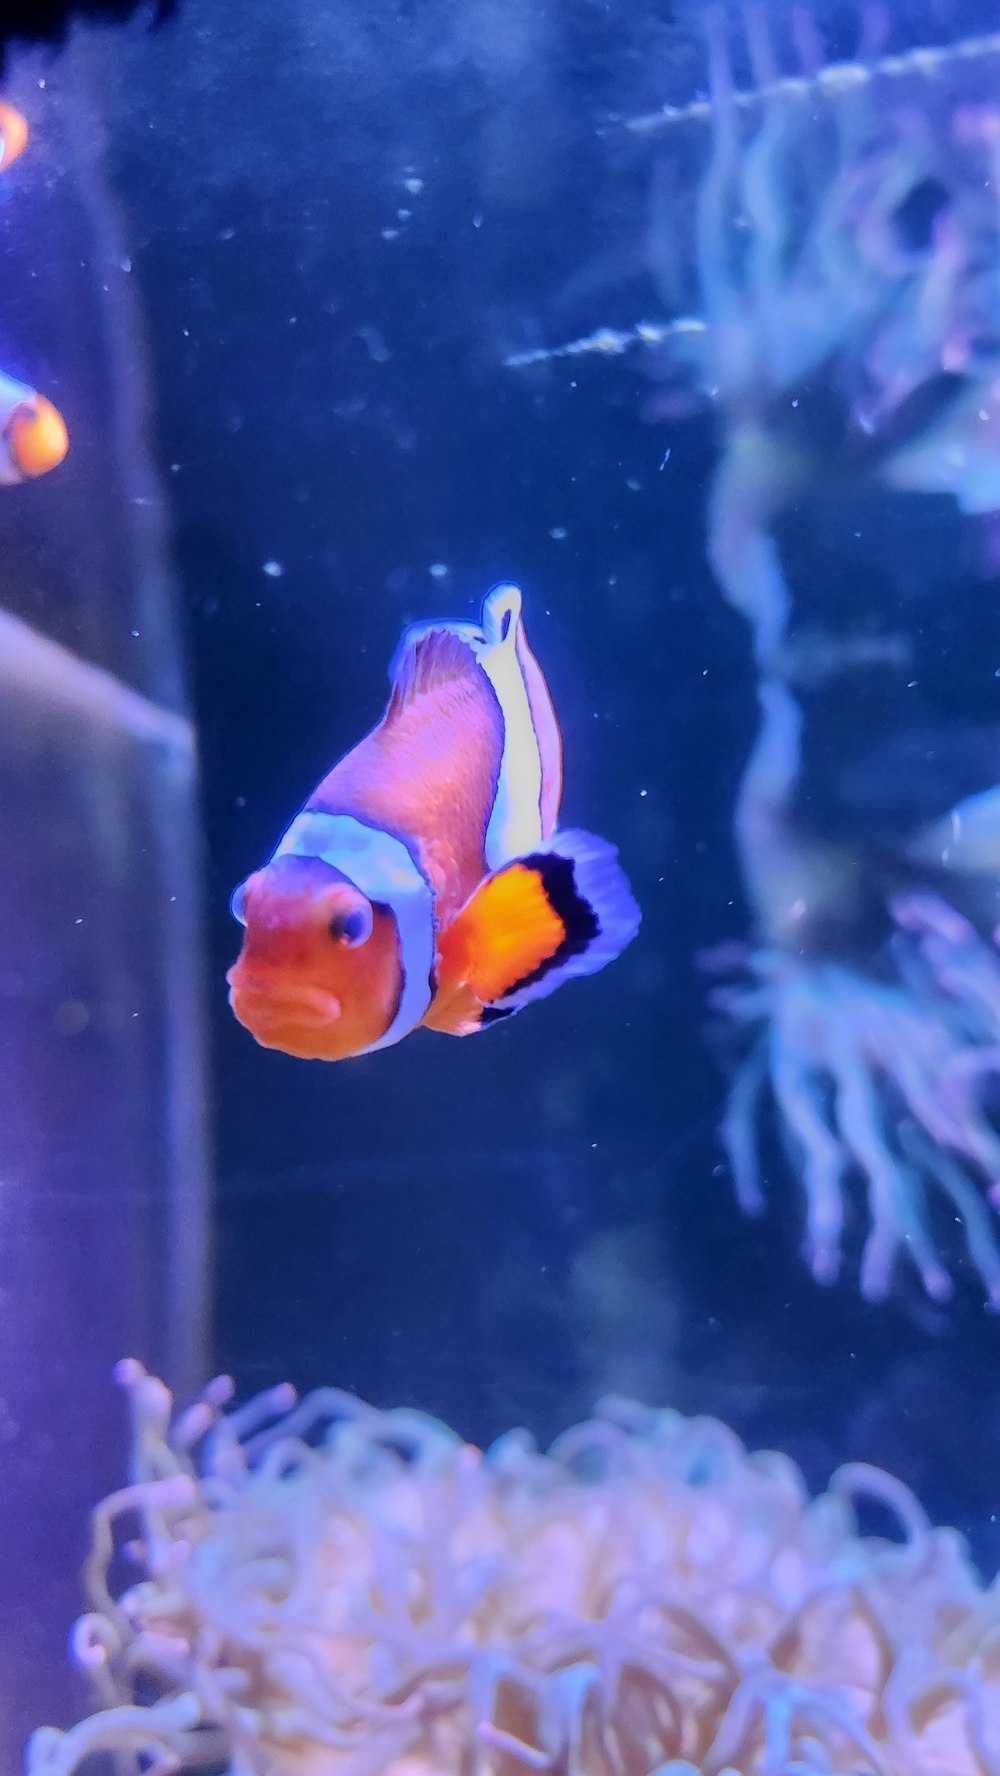 an orange and white clown fish in an aquarium